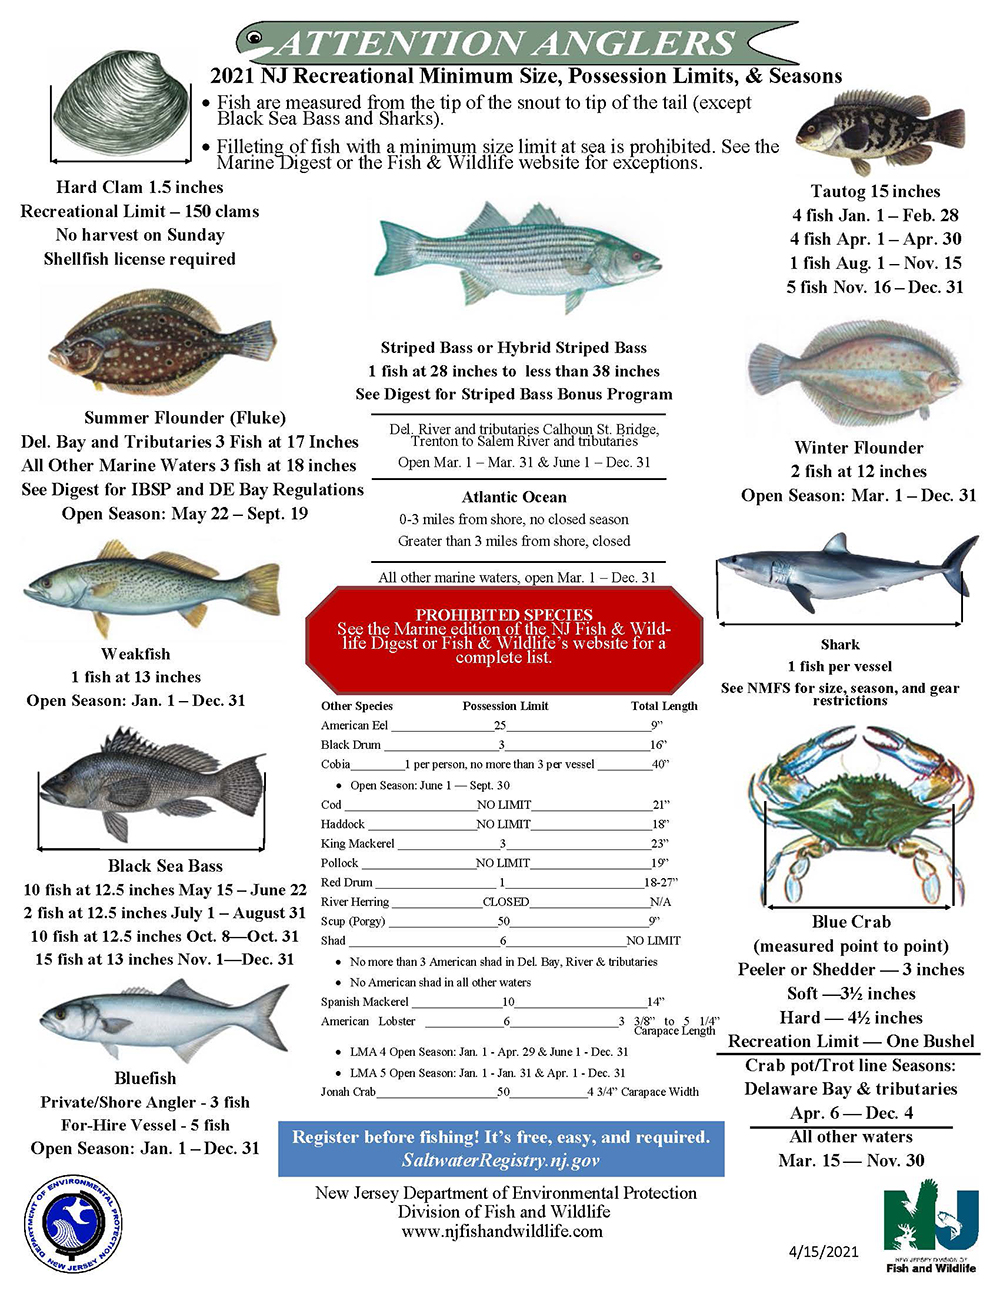 2024 NJ Licensing - Saltwater Registry Added - Saltwater Fishing